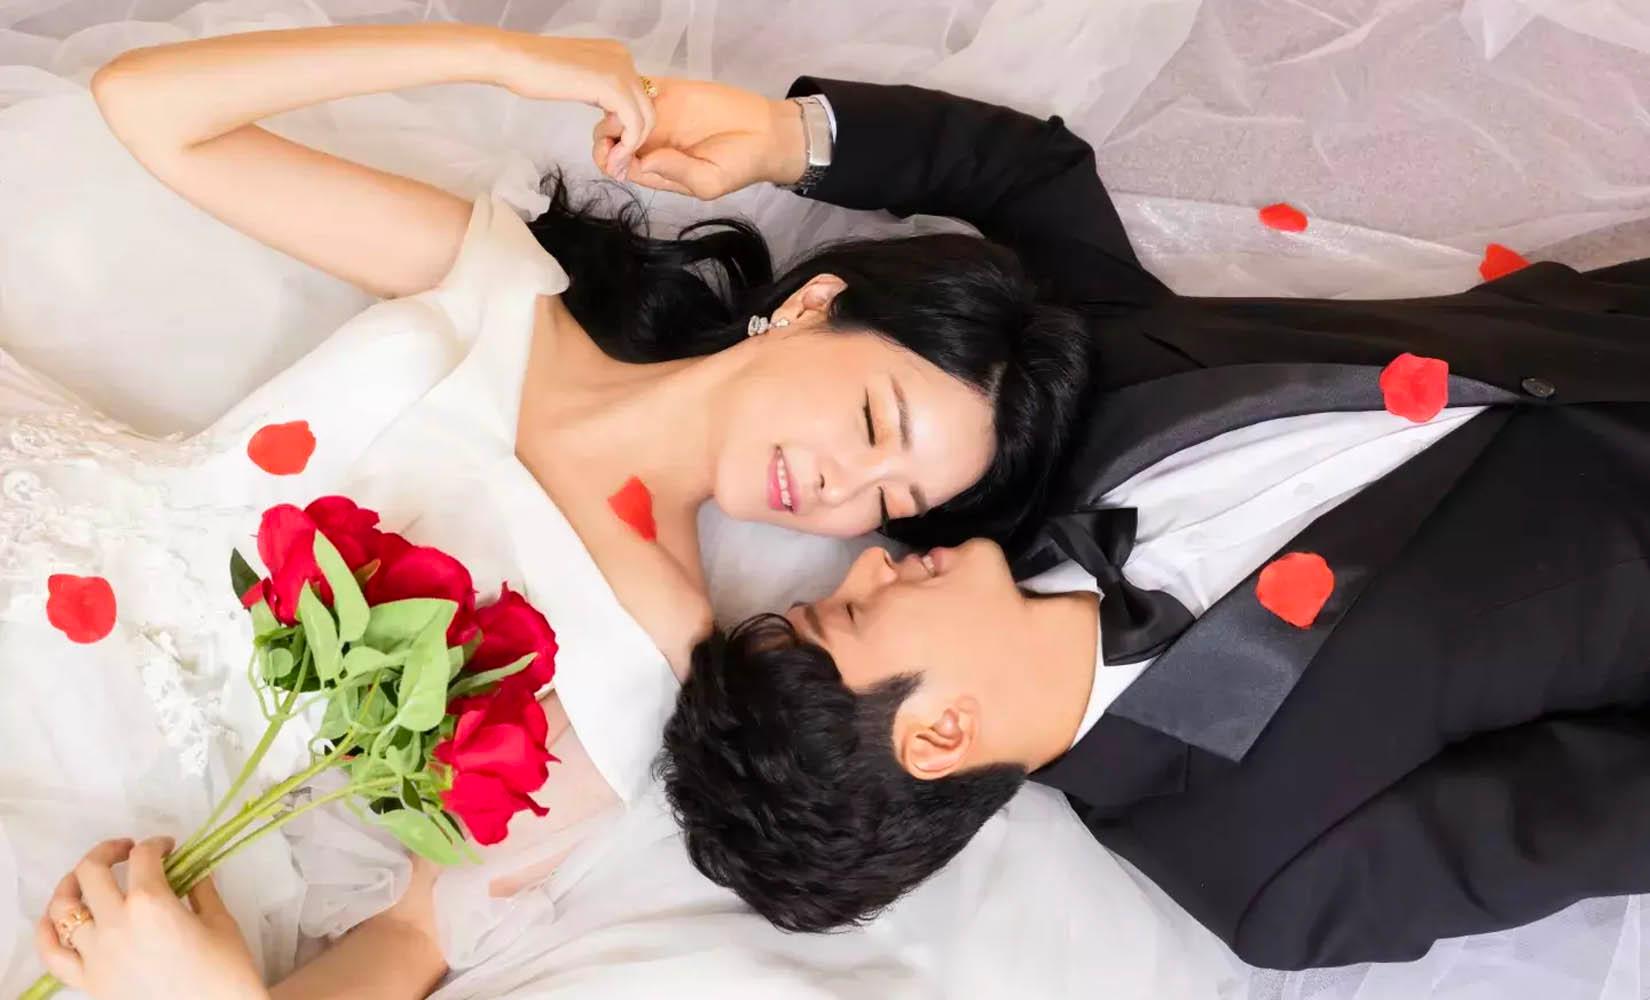 May Wedding Dress Cafe: Tiệm cafe cho thuê váy cưới xinh xắn ở Busan